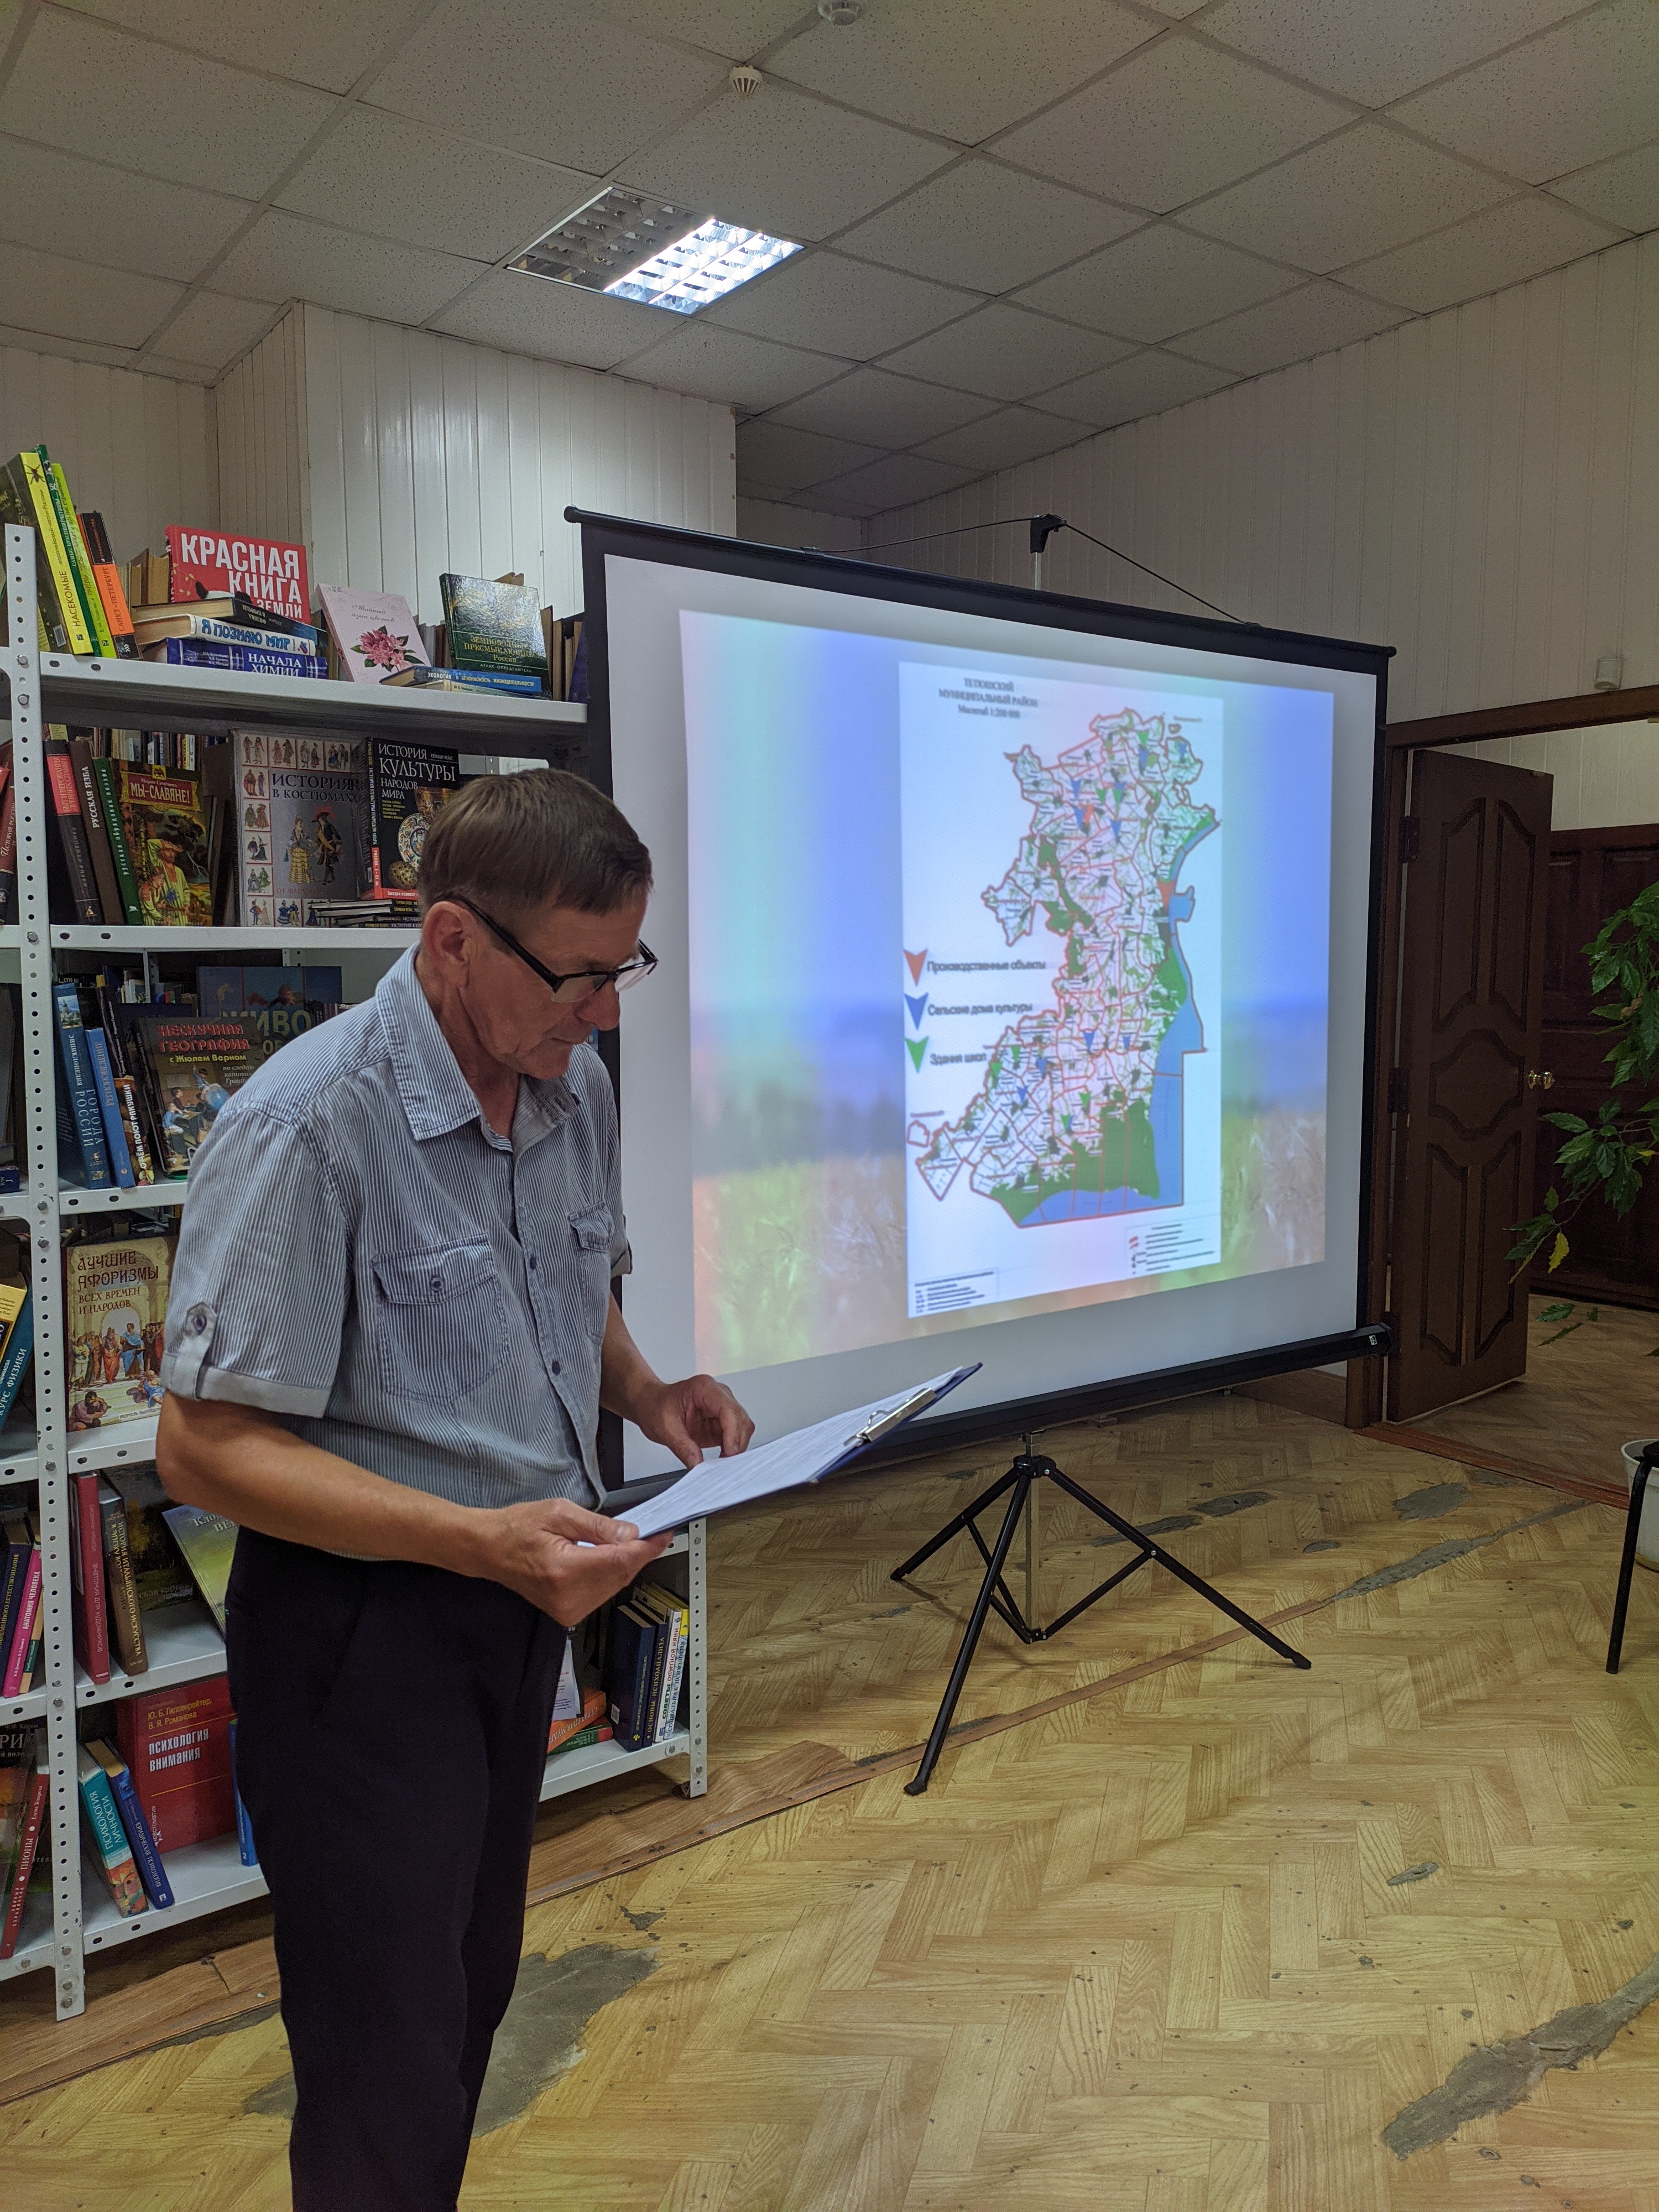 Презентация книг "Бизяевка" и "Маевка". Автор: Олег Евсеев, фото: Алсу Зиганьшина